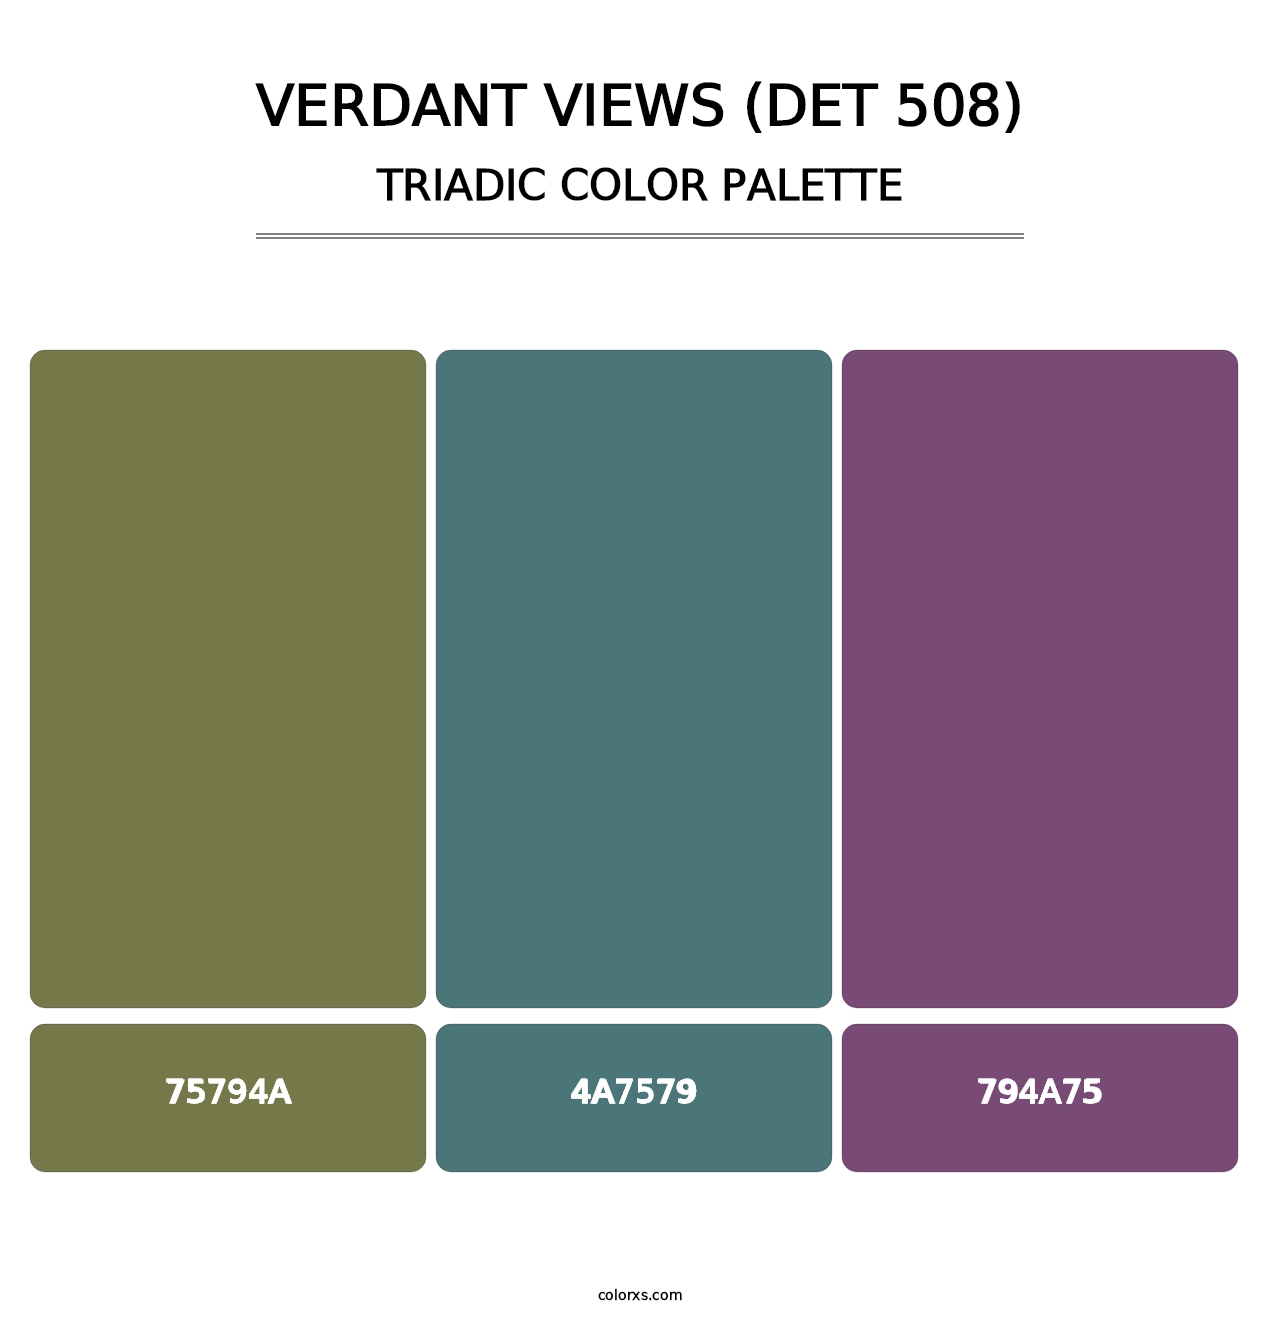 Verdant Views (DET 508) - Triadic Color Palette